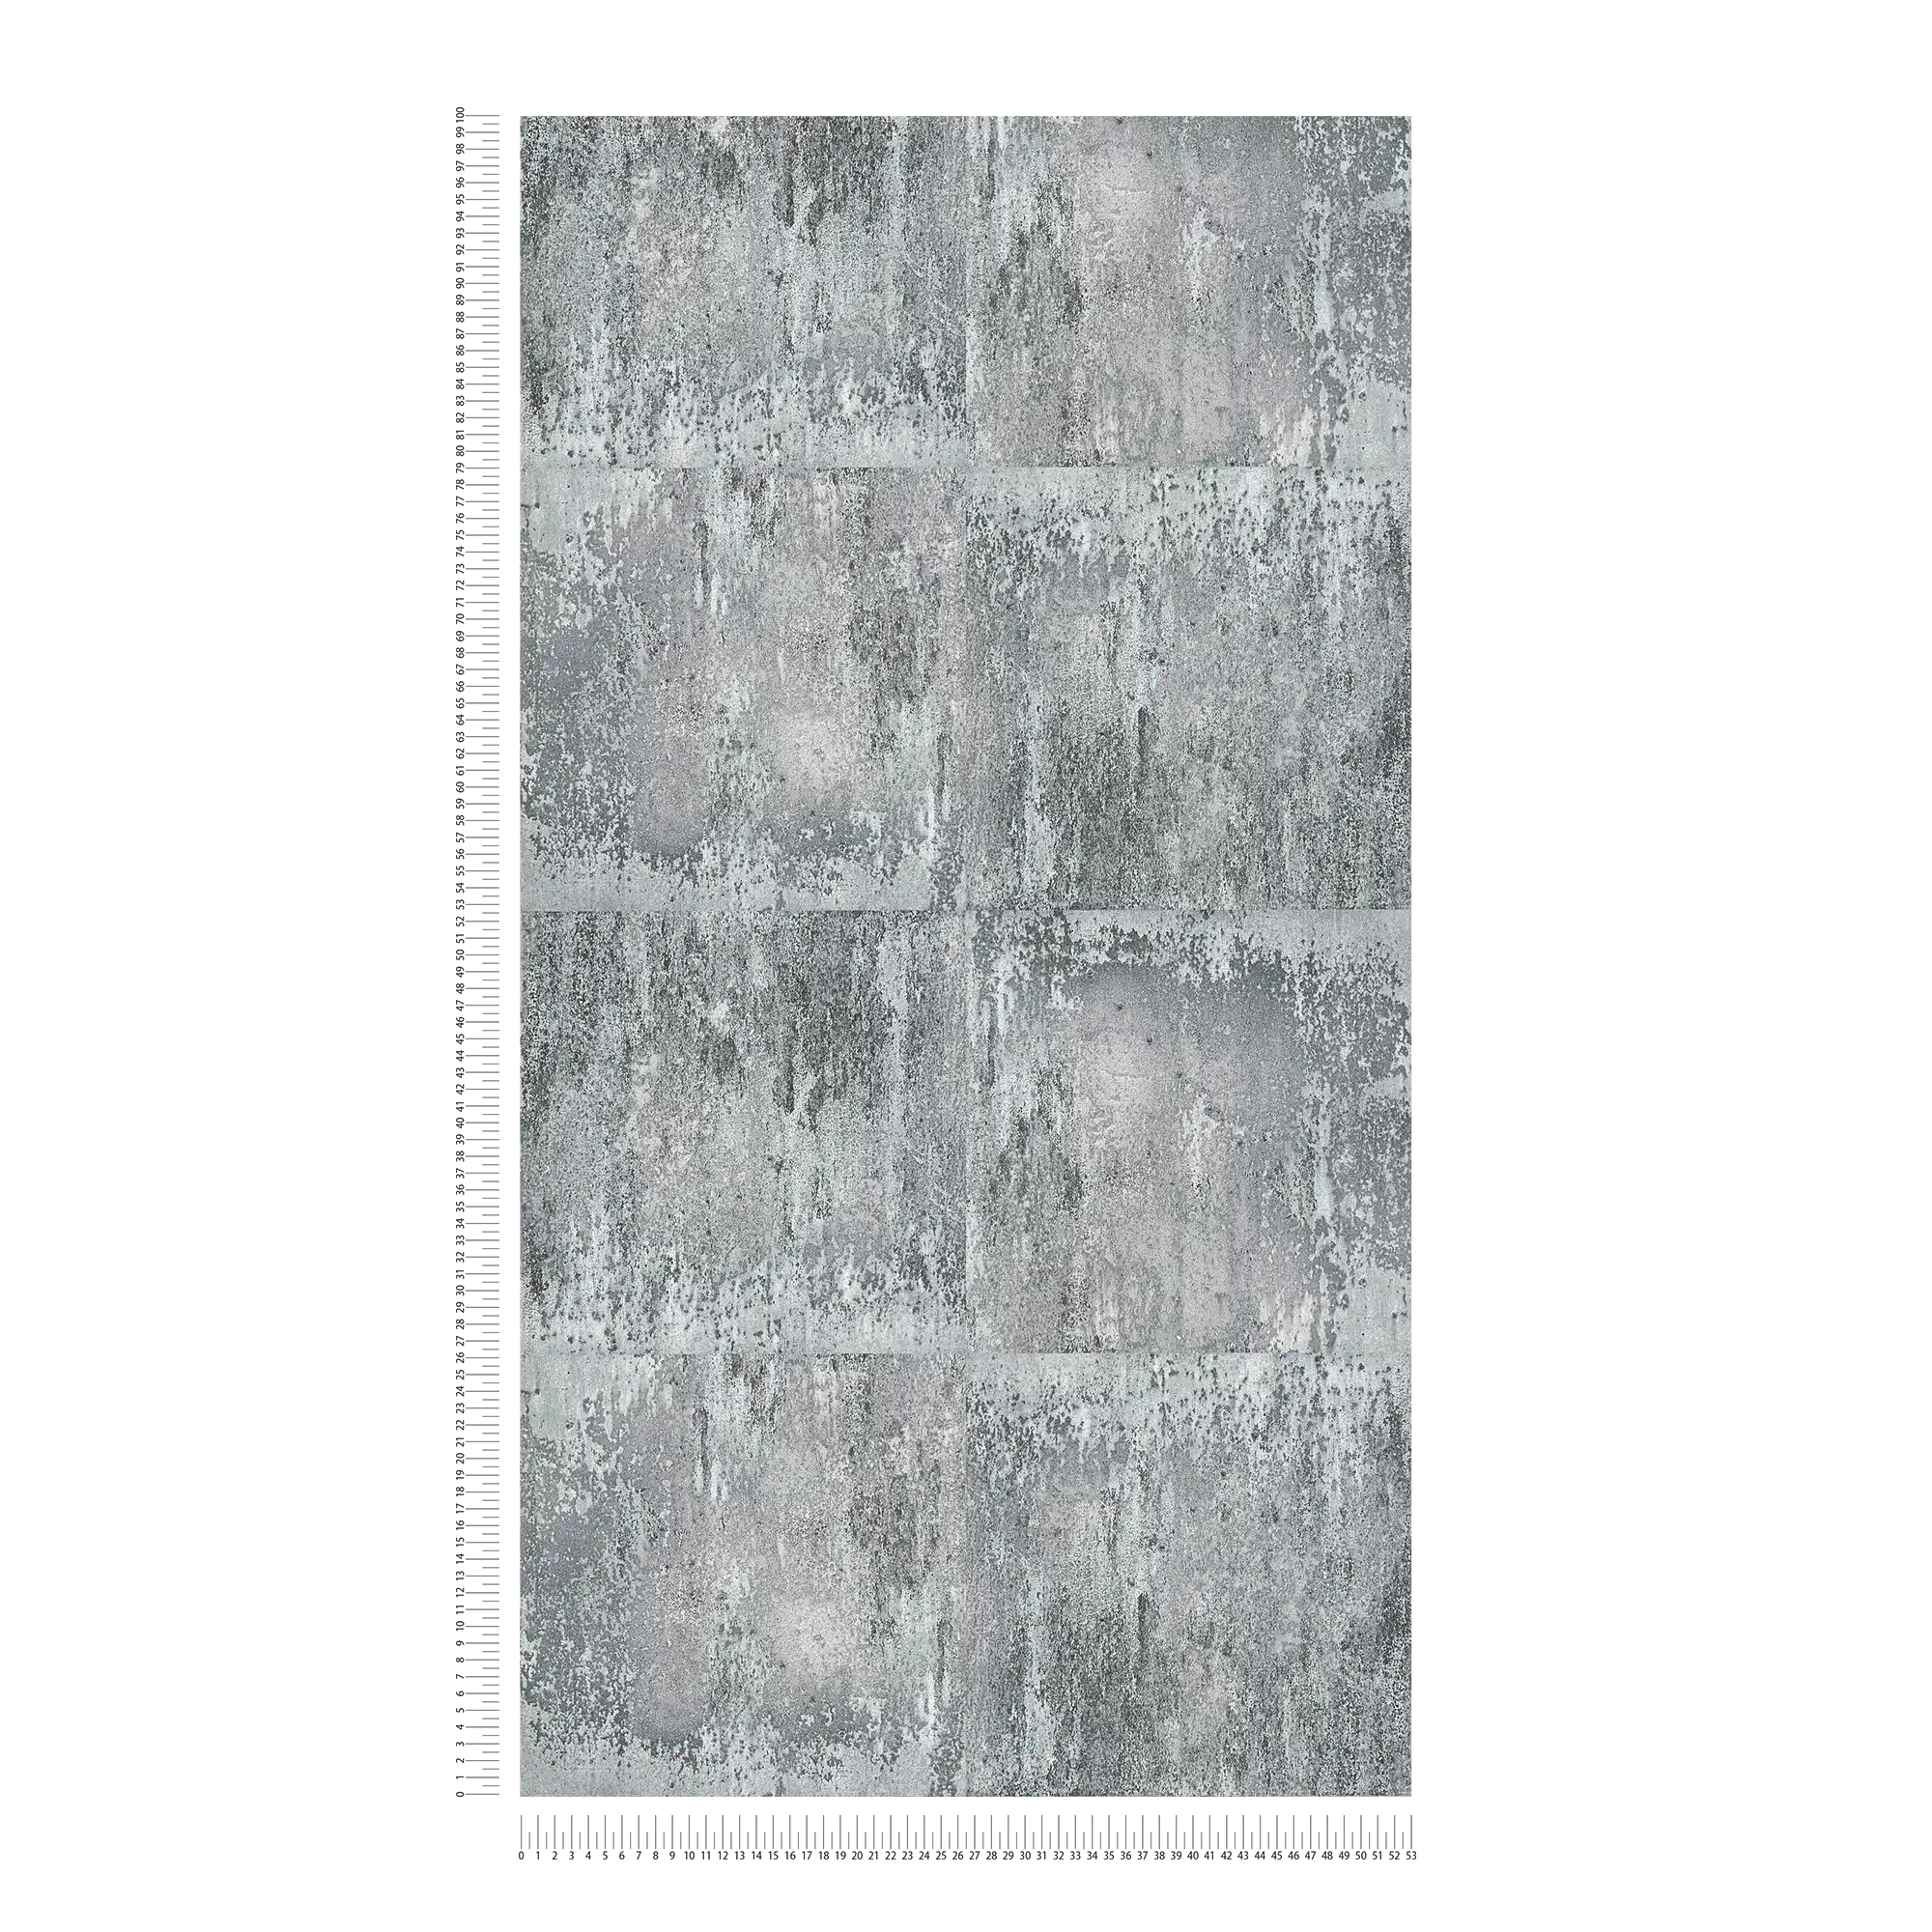             Papel pintado con aspecto metálico rústico y dibujo rugoso - gris, negro, plata
        